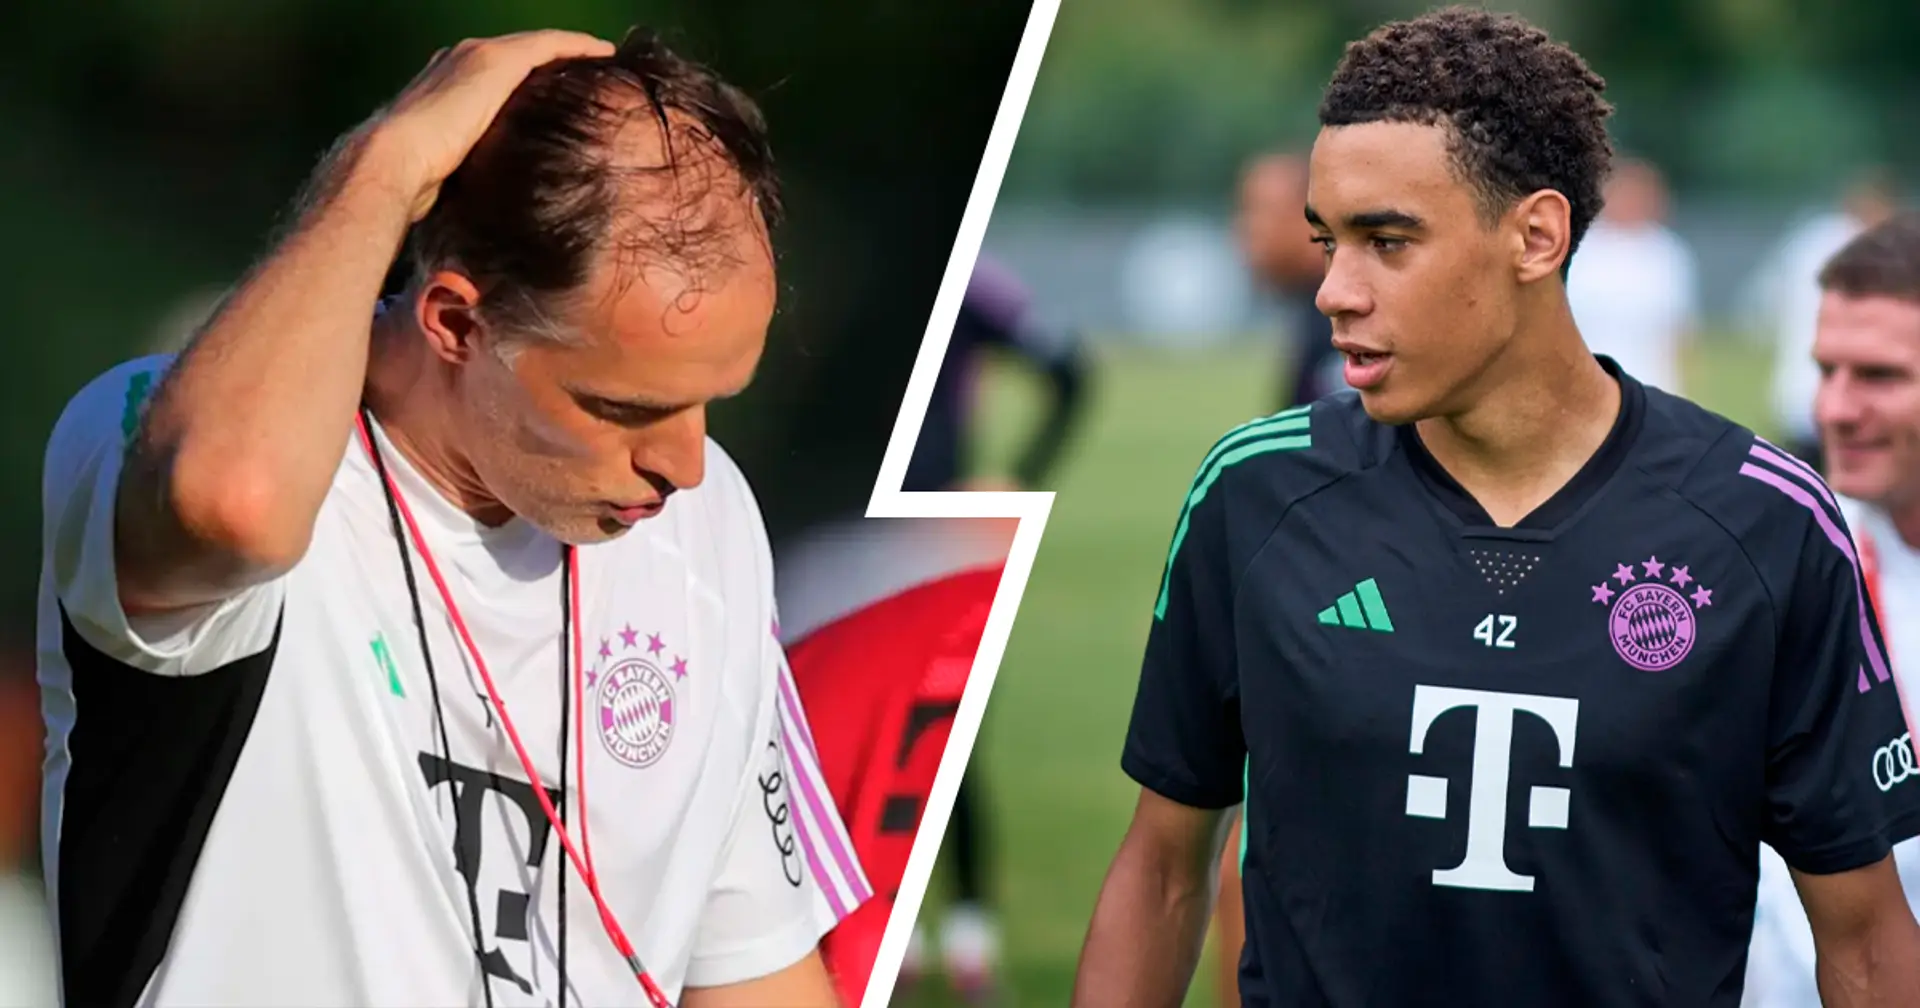 "Spiel mal einfach, Jamal!": Nicht mal Bayerns goldener Junge Musiala kann der Kritik von Tuchel entkommen